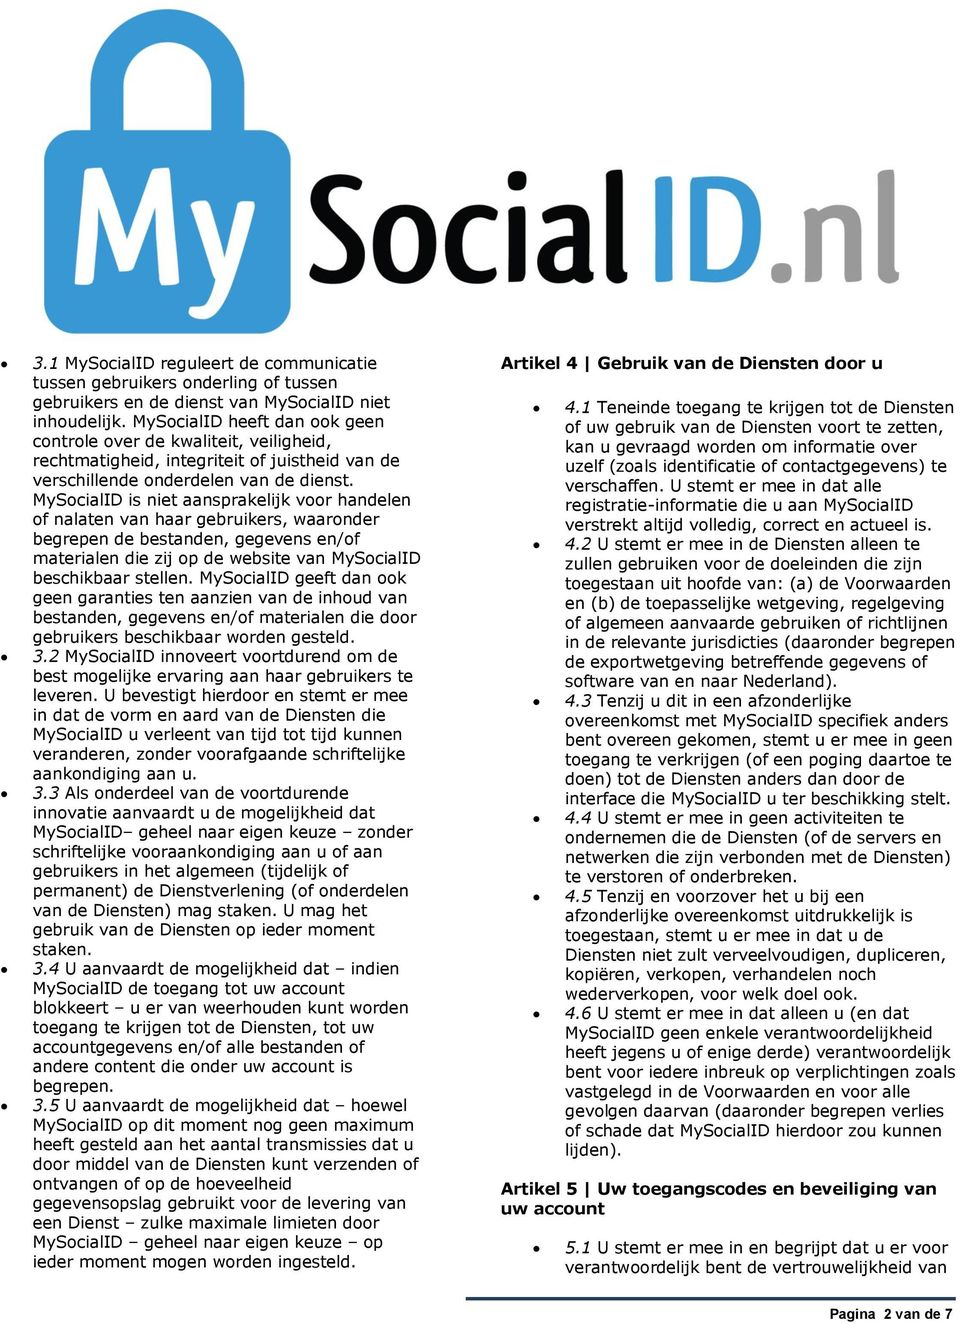 MySocialID is niet aansprakelijk voor handelen of nalaten van haar gebruikers, waaronder begrepen de bestanden, gegevens en/of materialen die zij op de website van MySocialID beschikbaar stellen.